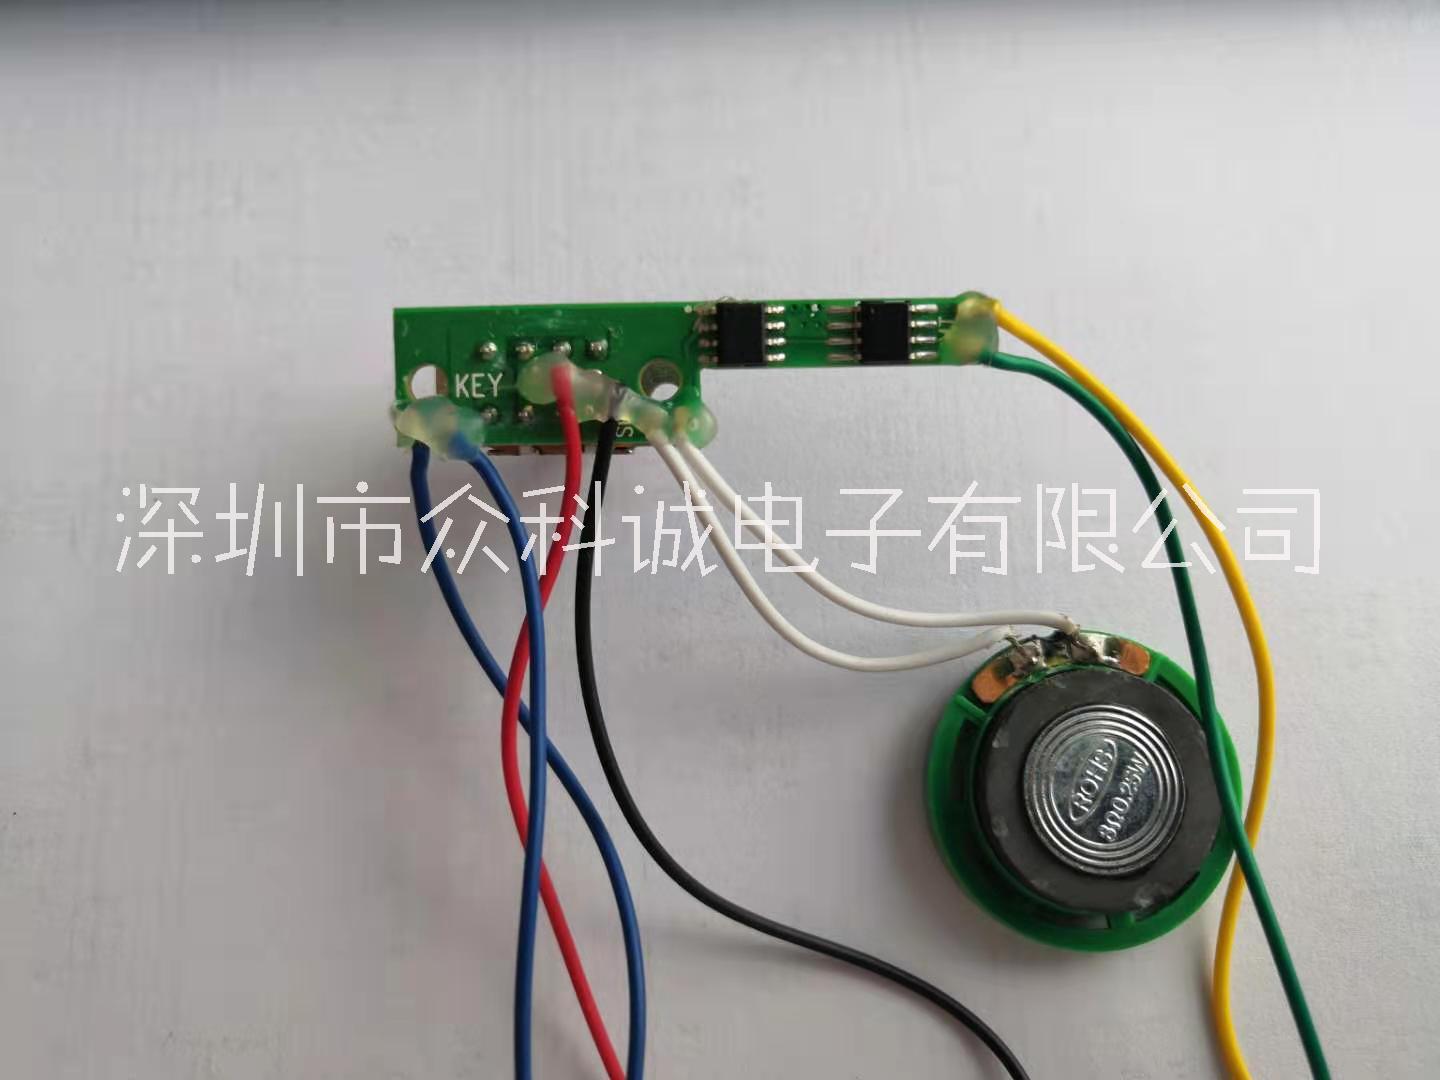 深圳玩具电路设计  深圳语音发声盒  玩具电子电路设计